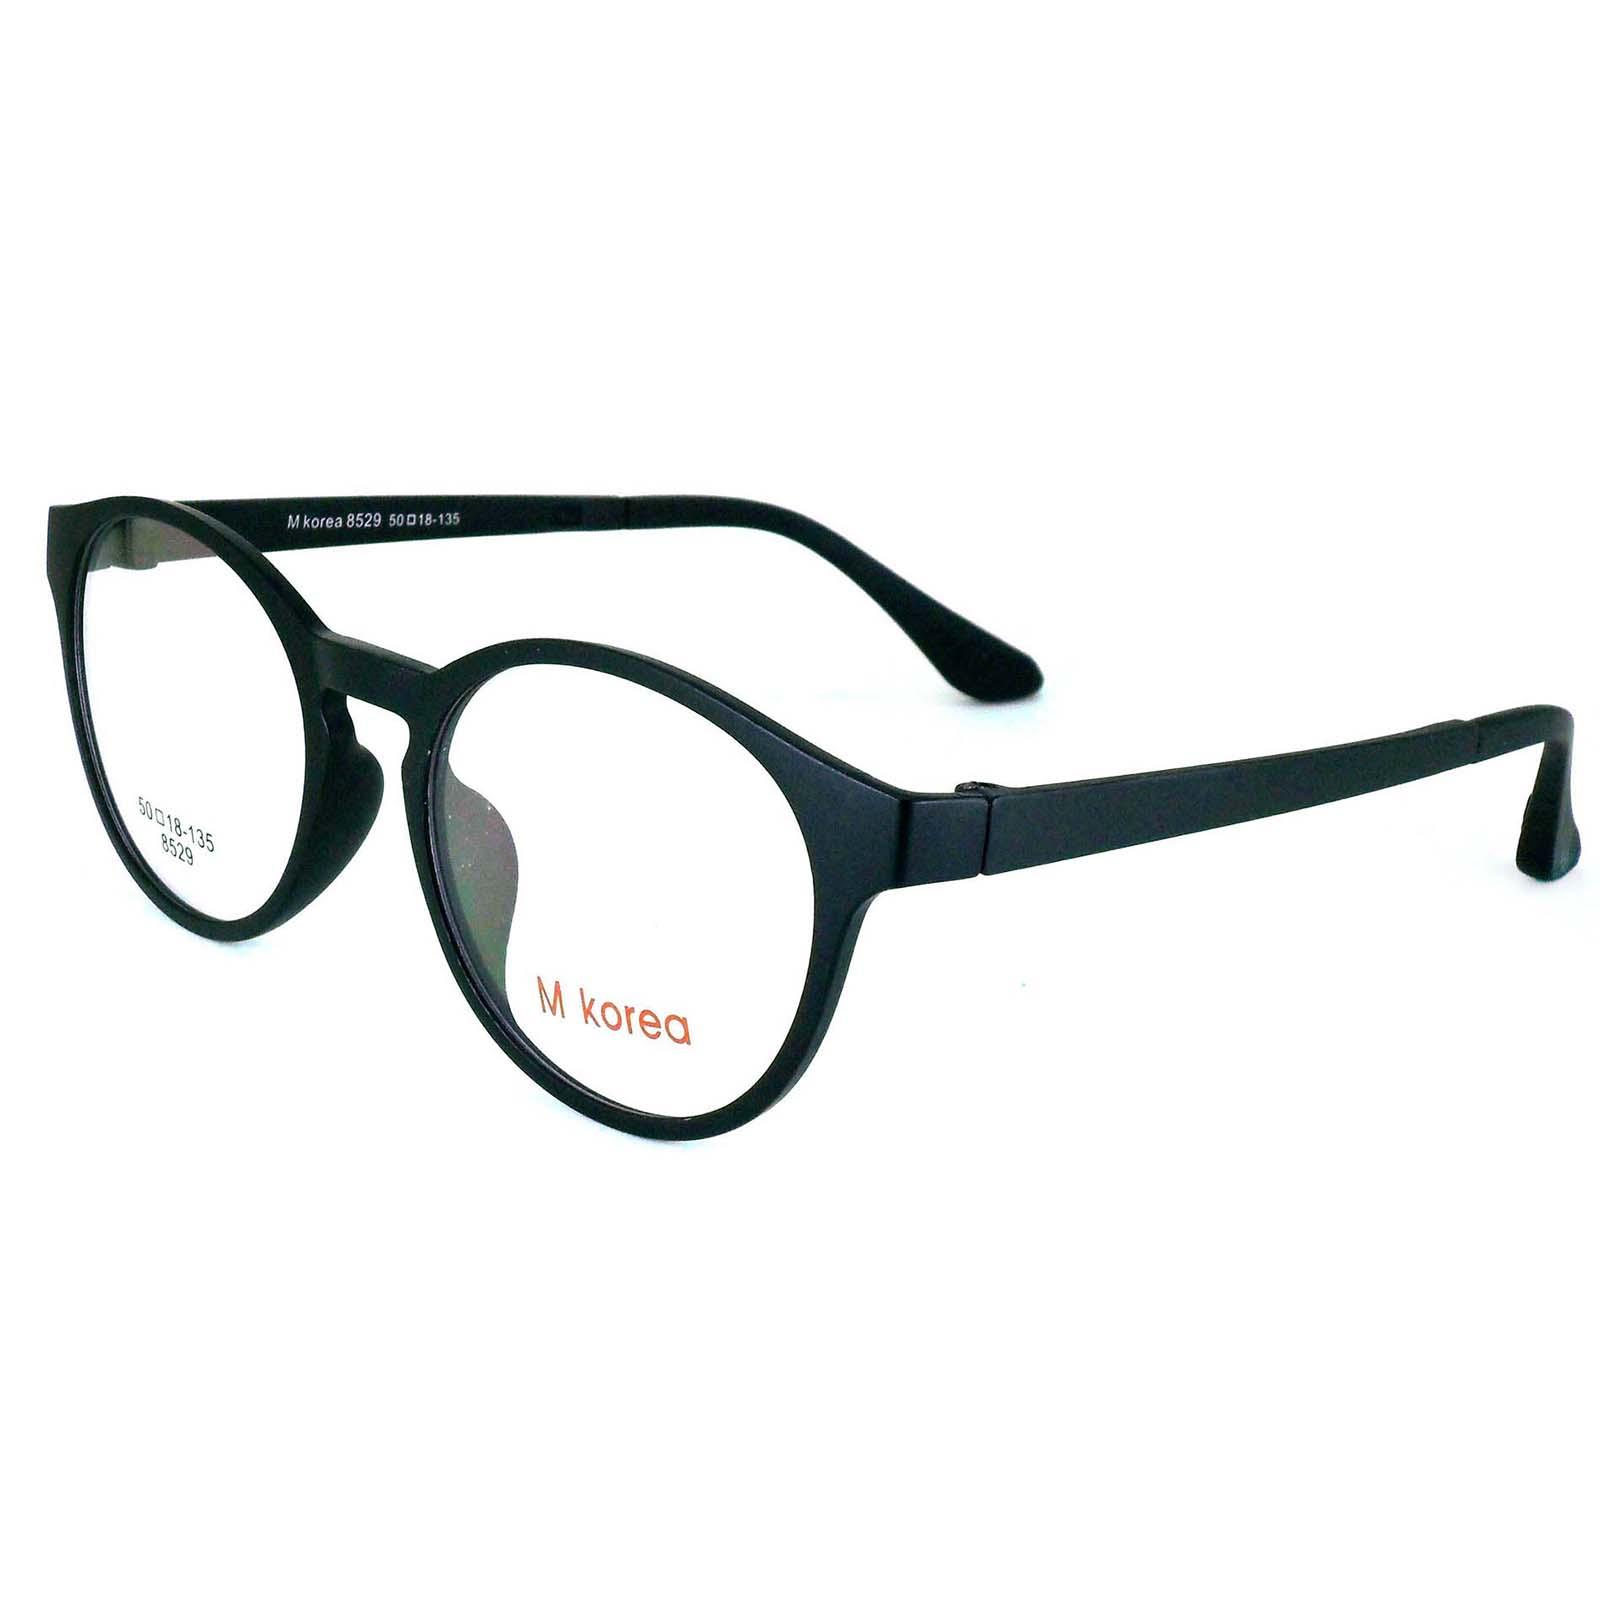 M Korea แว่นตา รุ่น 8529 ทรงสปอร์ต วัสดุ TR-90 เบาและยืดหยุนได้สูง ขาข้อต่อ ( สำหรับตัดเลนส์ ) กรอบแว่นตา แว่นสายตา แฟชั่น EyewearTop Glasses